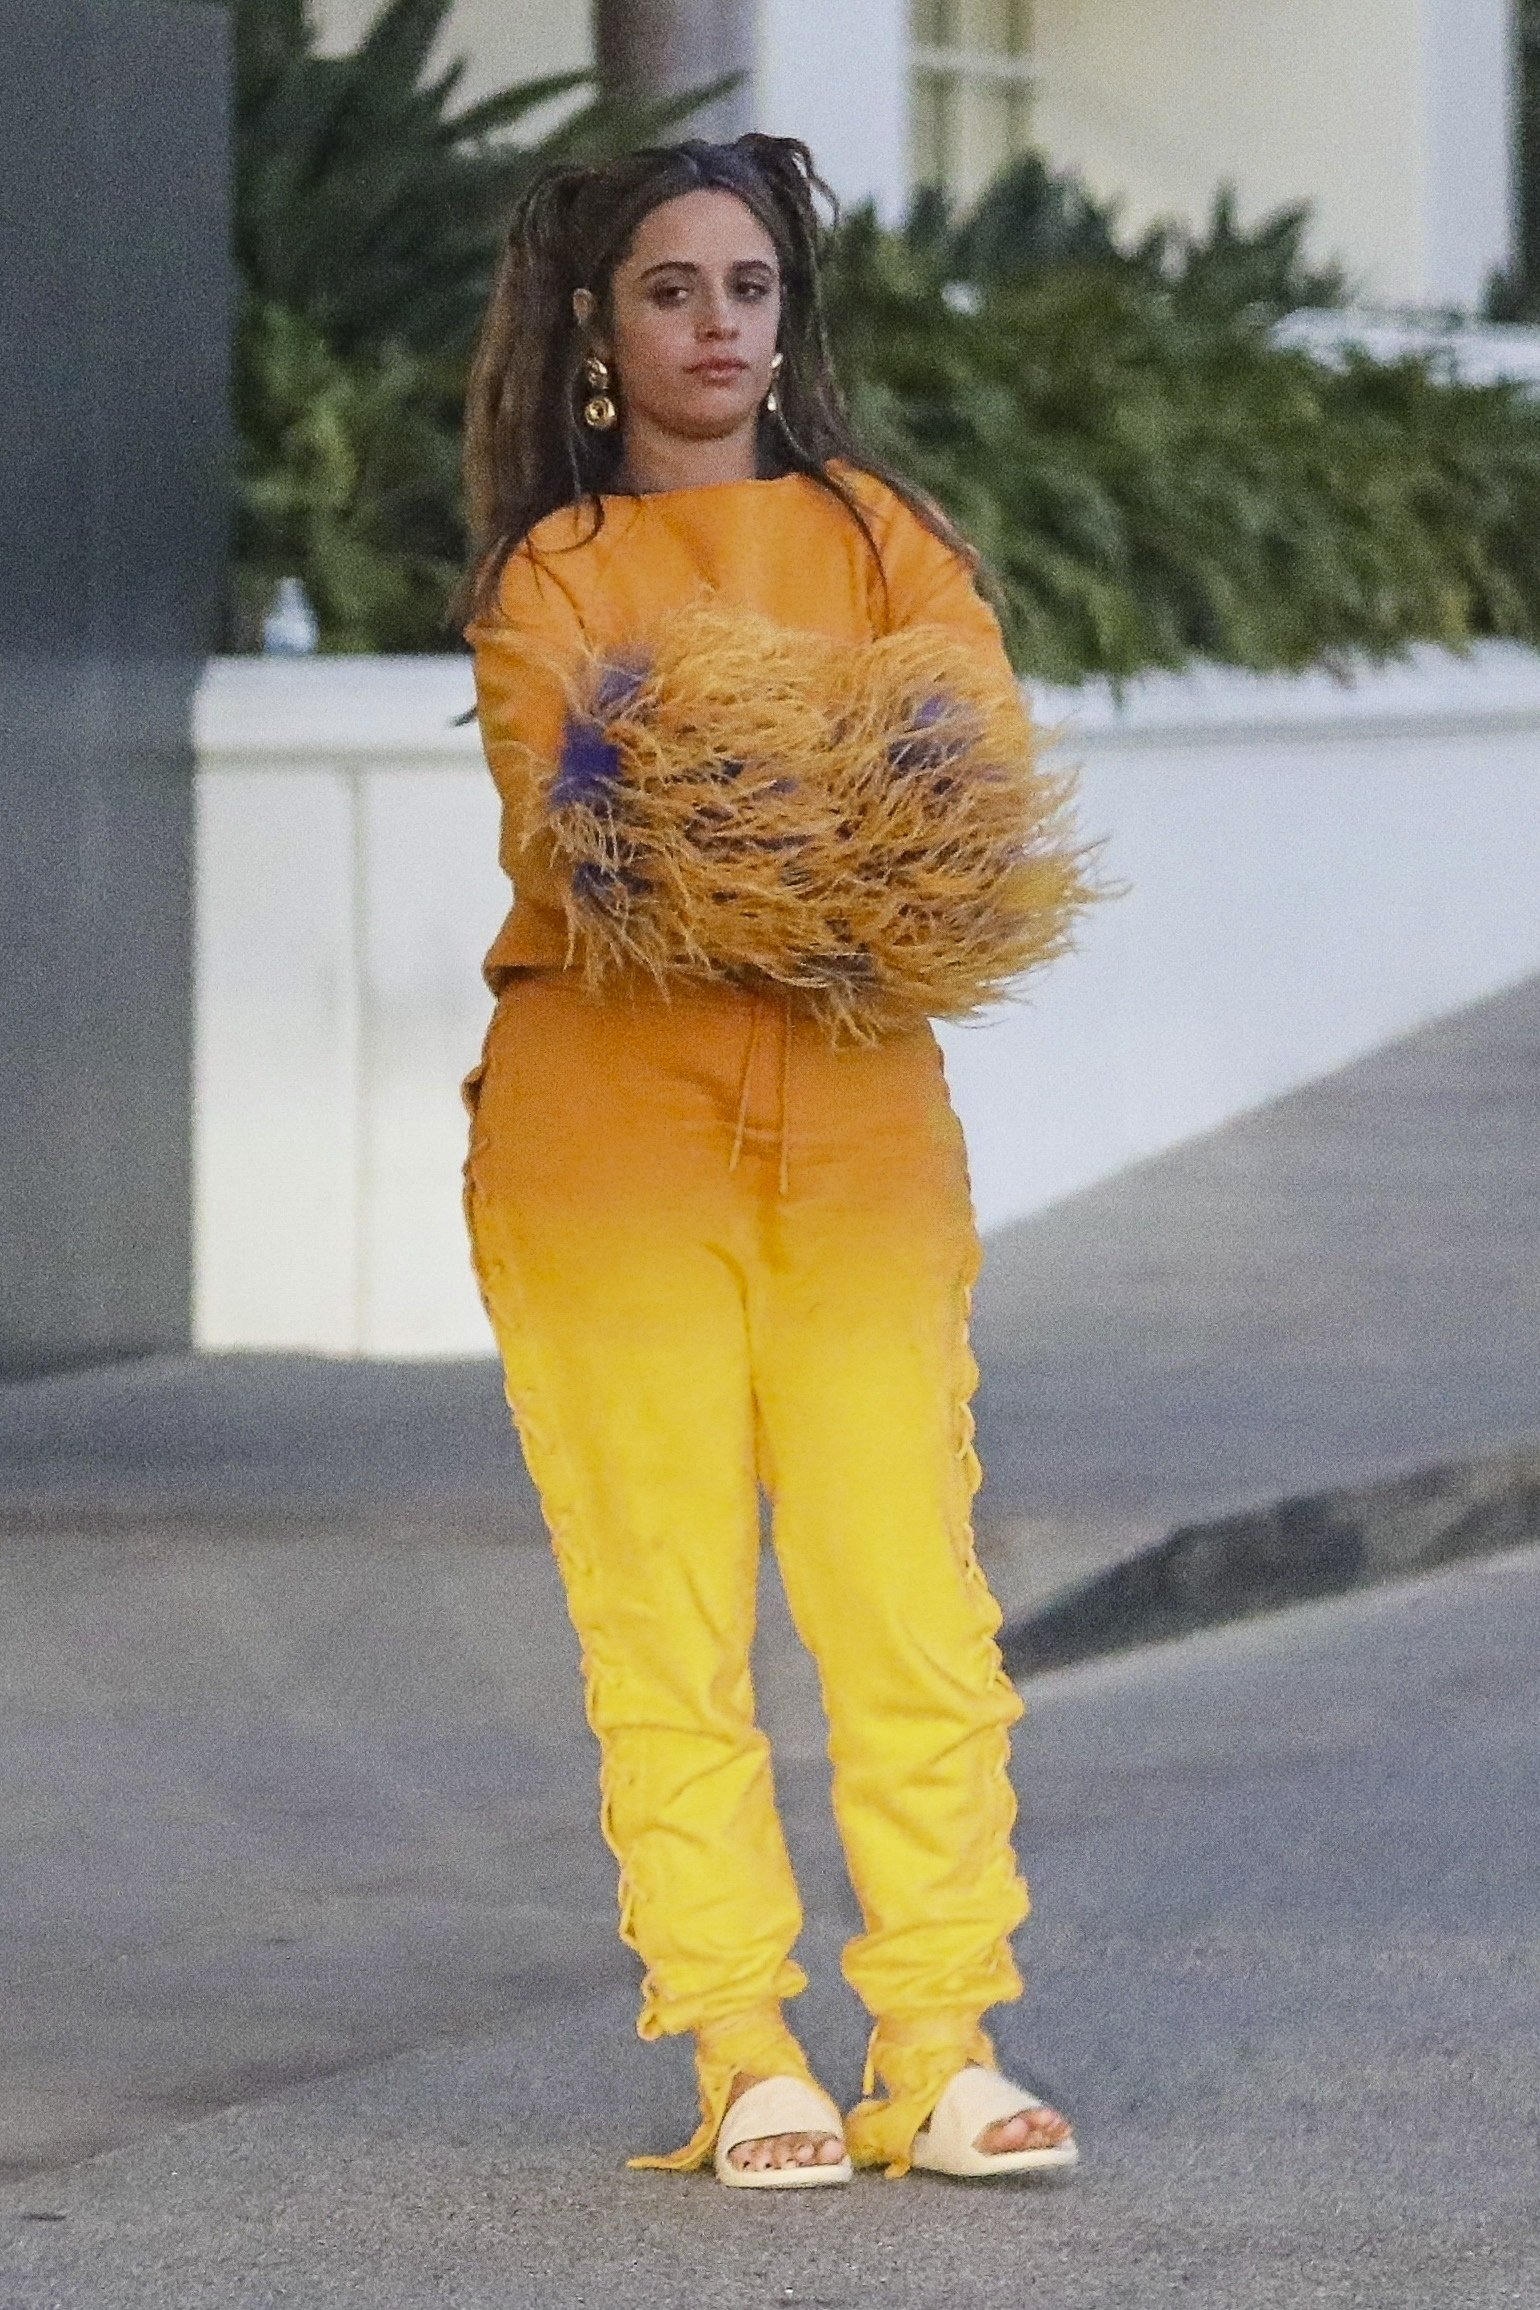 Camila Cabello sorprendió con su look para ir a comer a un exclusivo restaurante en Santa Mónica con un grupo de amigos. La artista lució un conjunto de pantalón y buzo naranja y amarillo, con plumas en las mangas. Además, llevó sandalias de goma